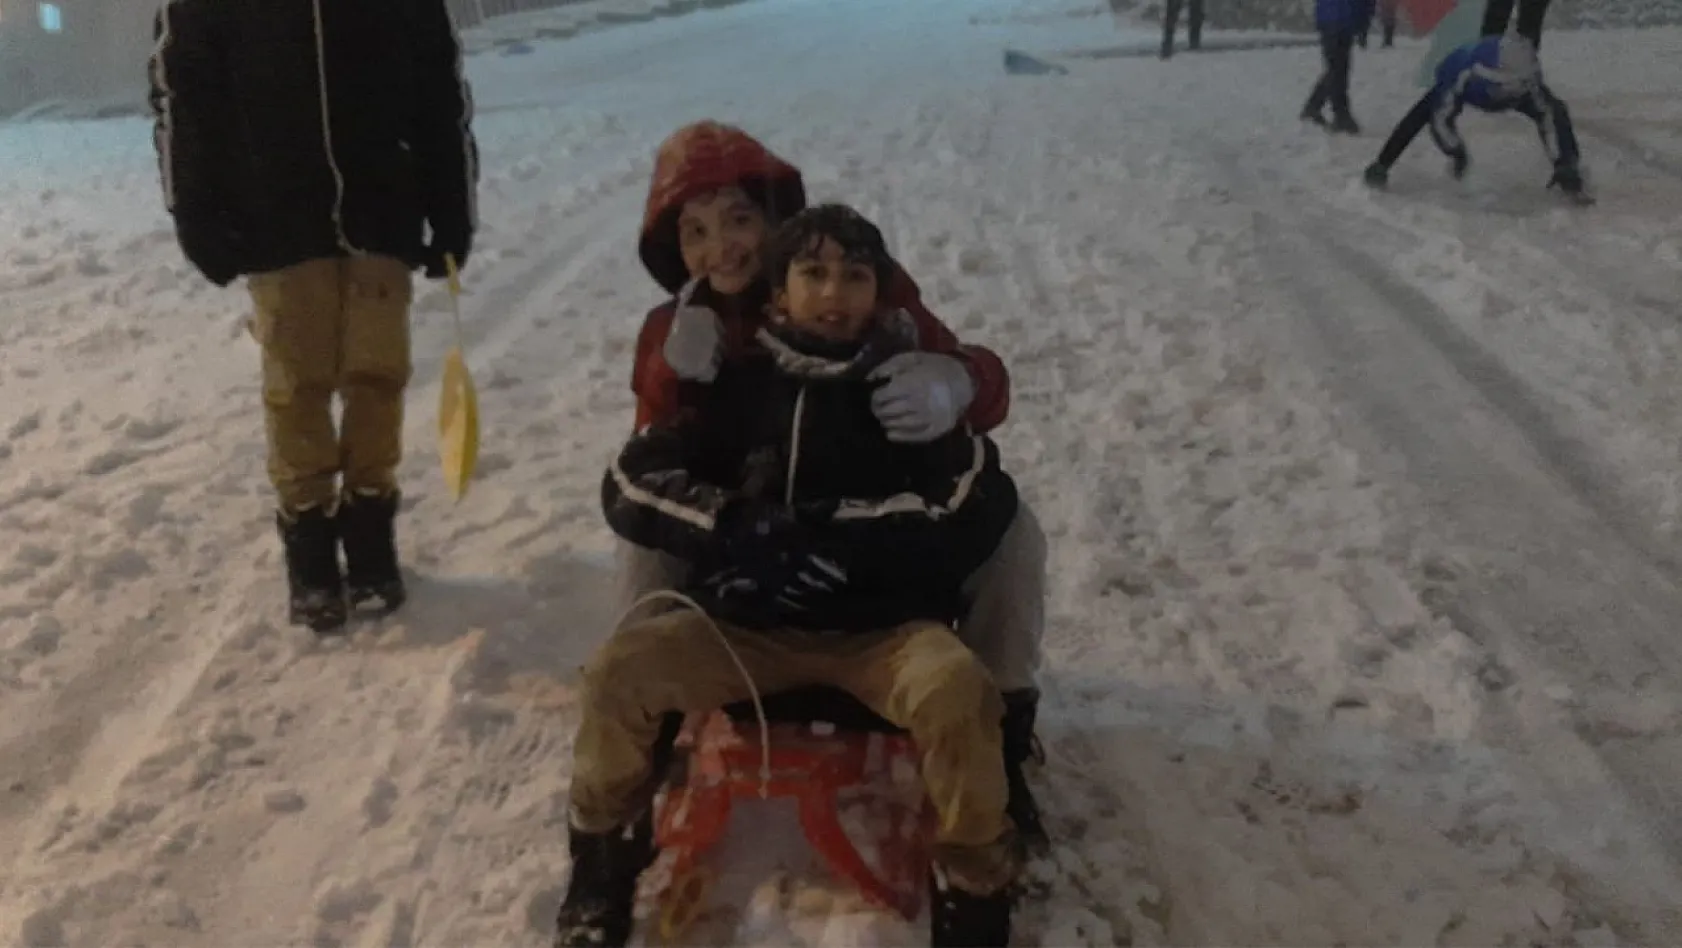 Sitemle sevinci bir arada yaşayan çocukların kar heyecanı güldürdü